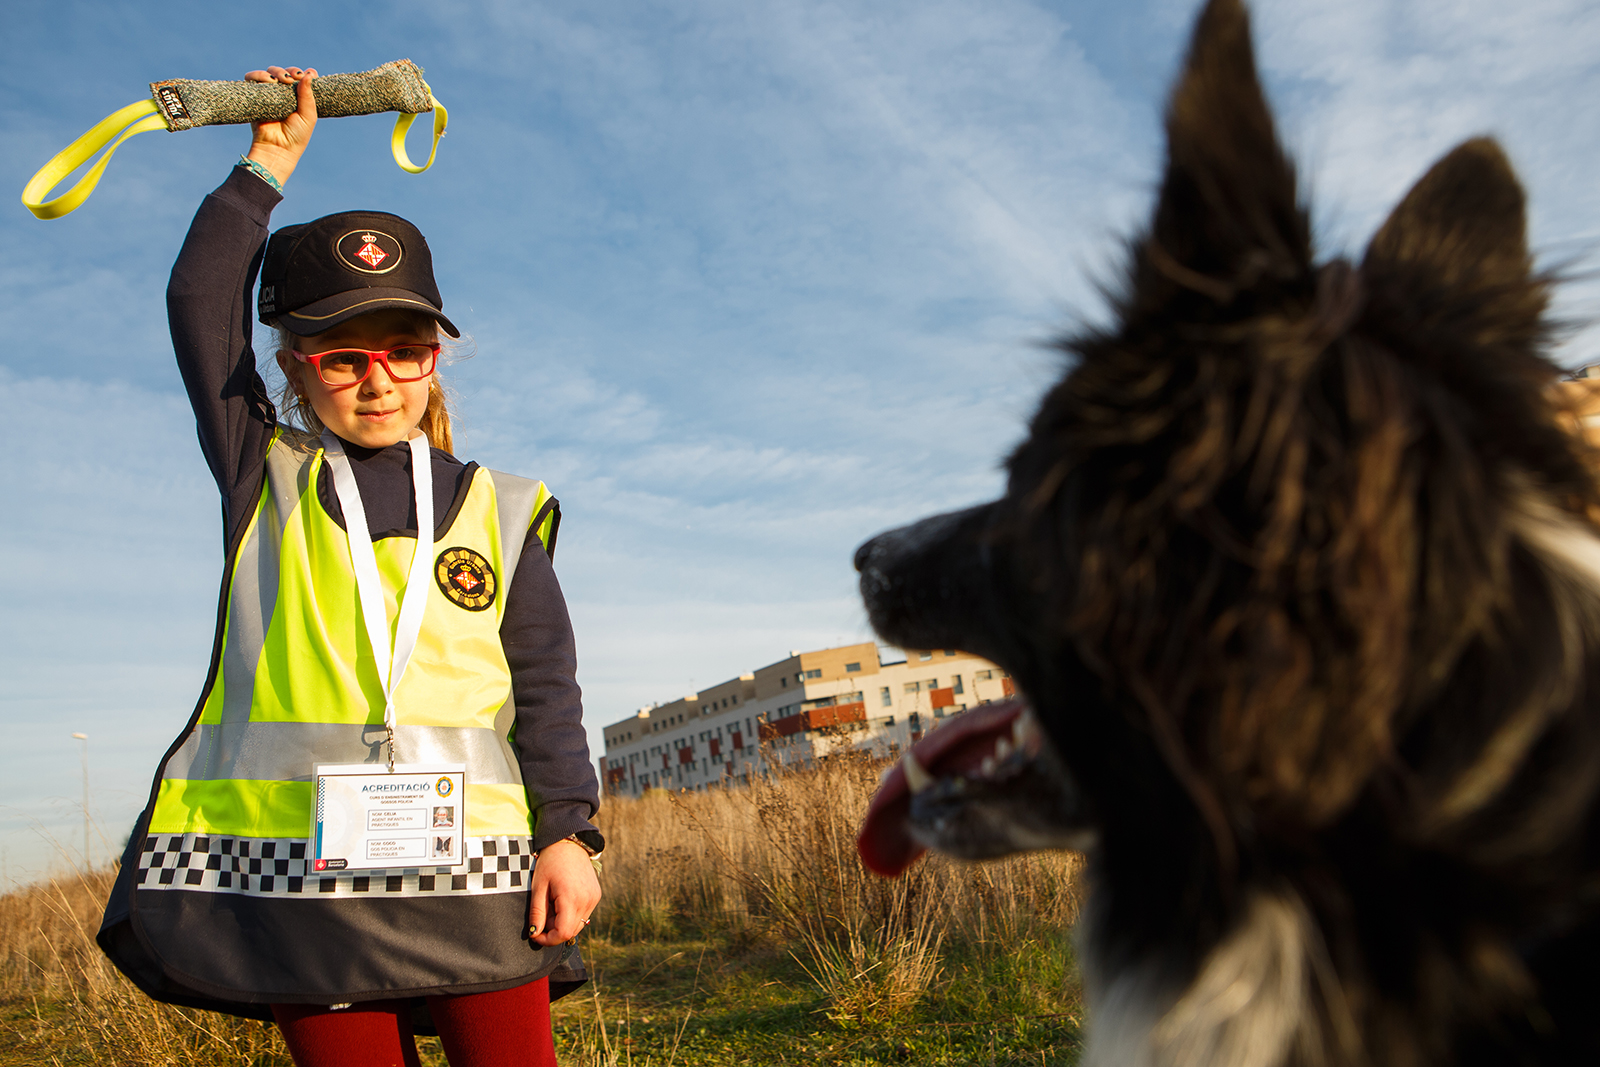 La Cèlia complint el seu somni d'entrenar a en Coco com a gos policia gràcies a la fundació Make-A-Wish i l'ajut de la Guàrdia Urbana de Barcelona